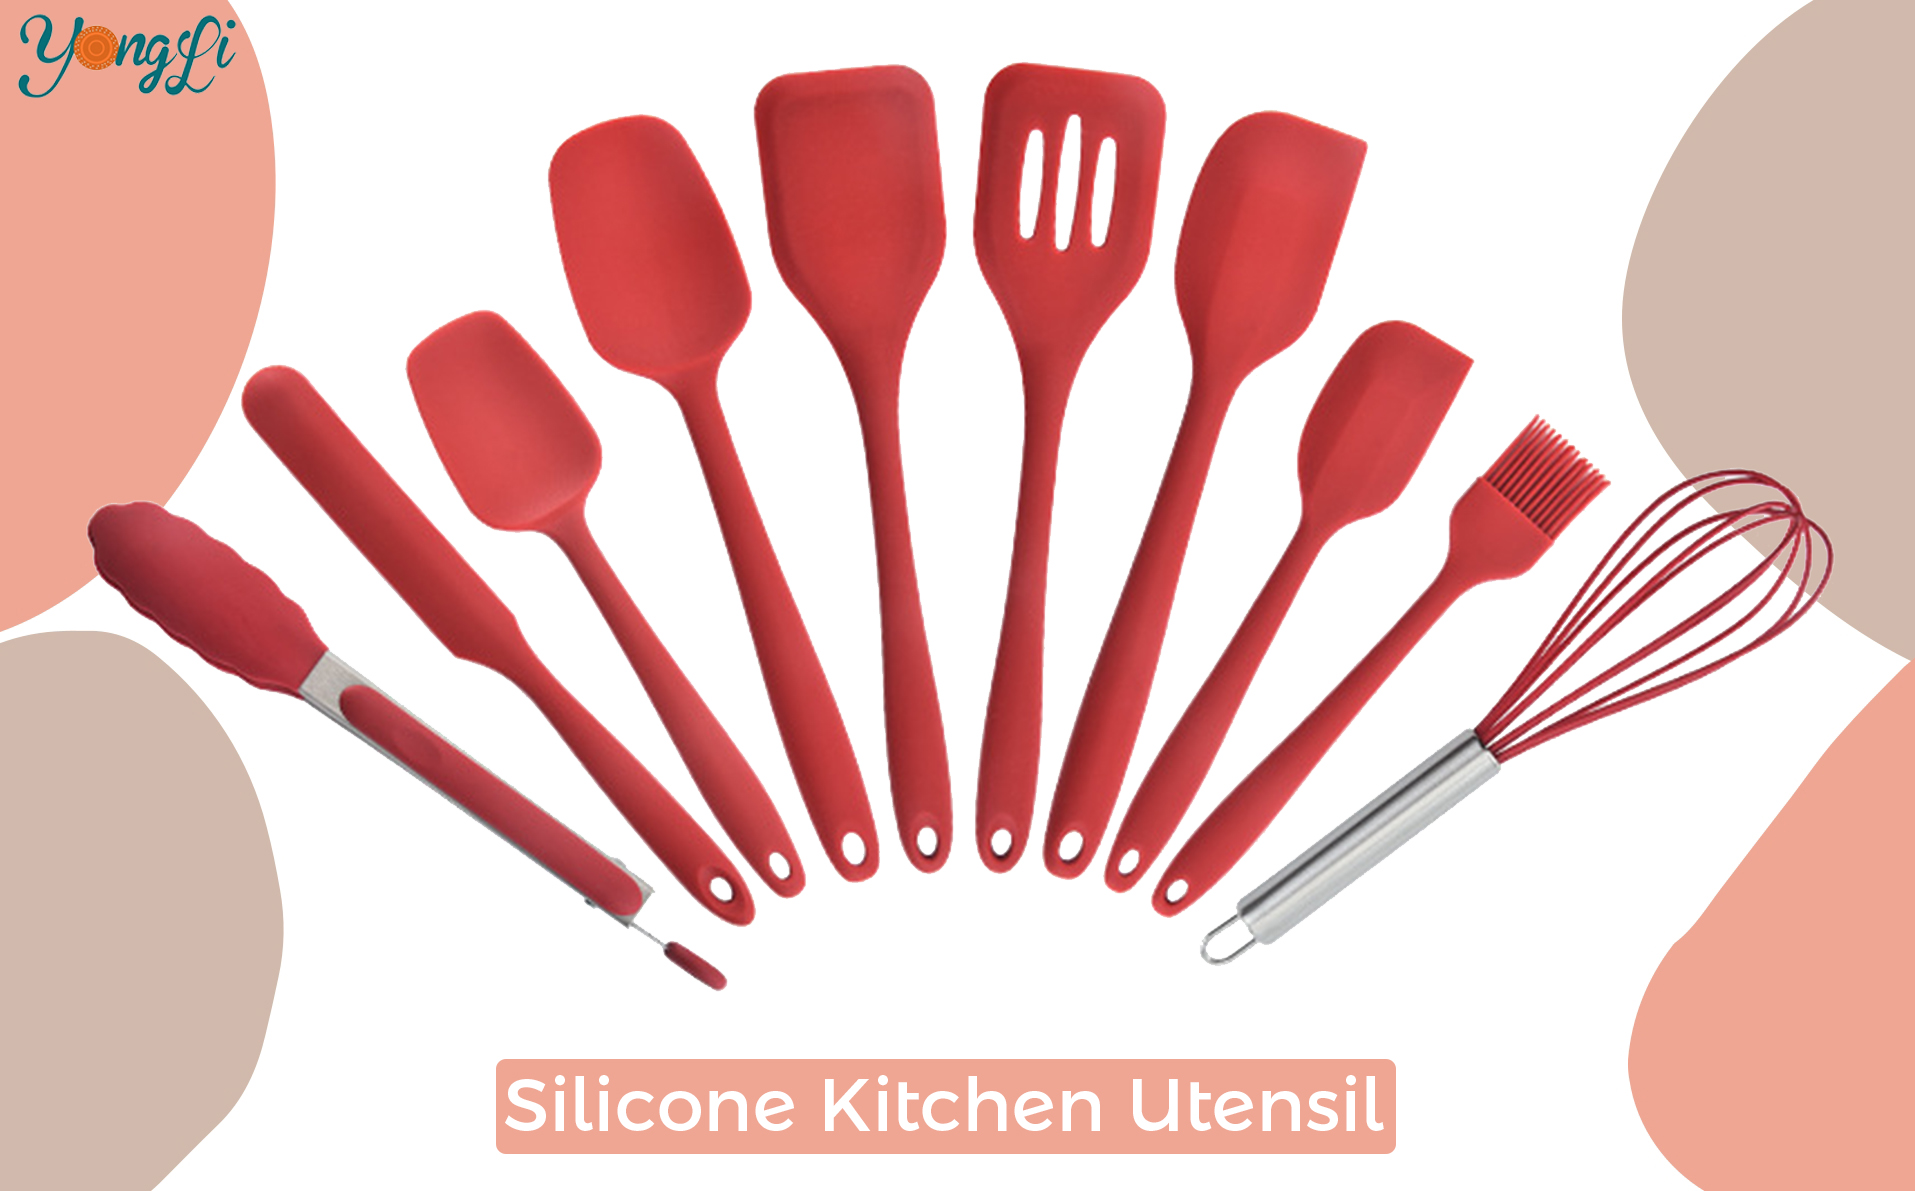 Letar du efter köksredskap i silikon?|Yongli